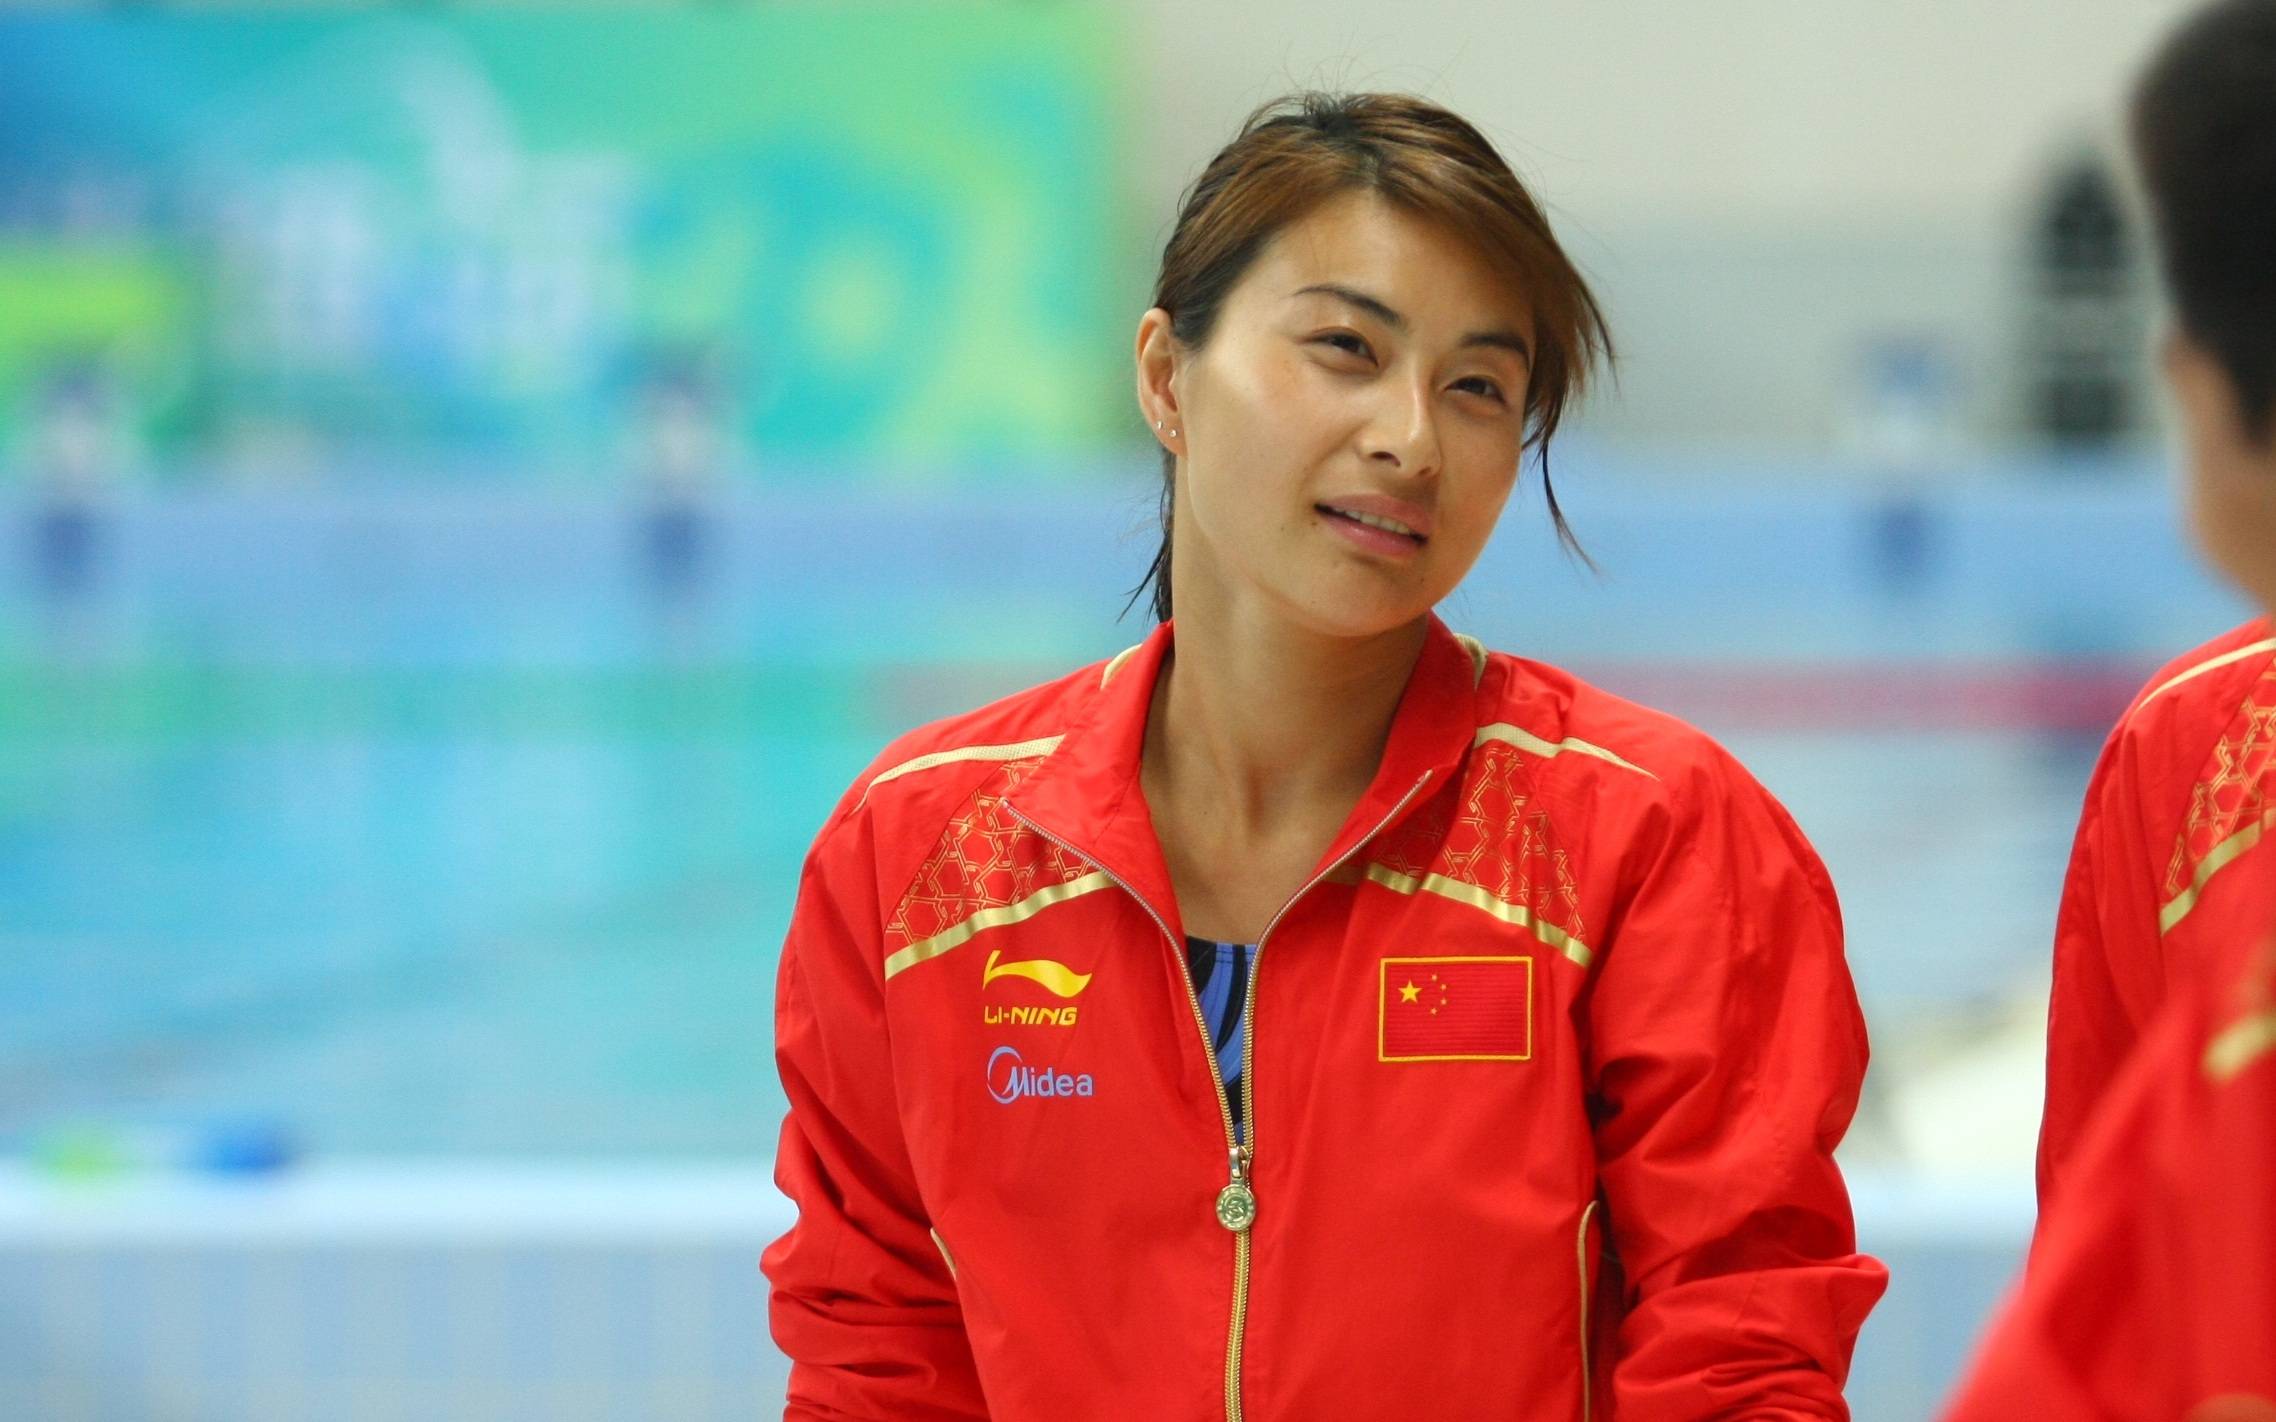 郭晶晶是中国跳水史上夺得世锦赛金牌最多的运动员